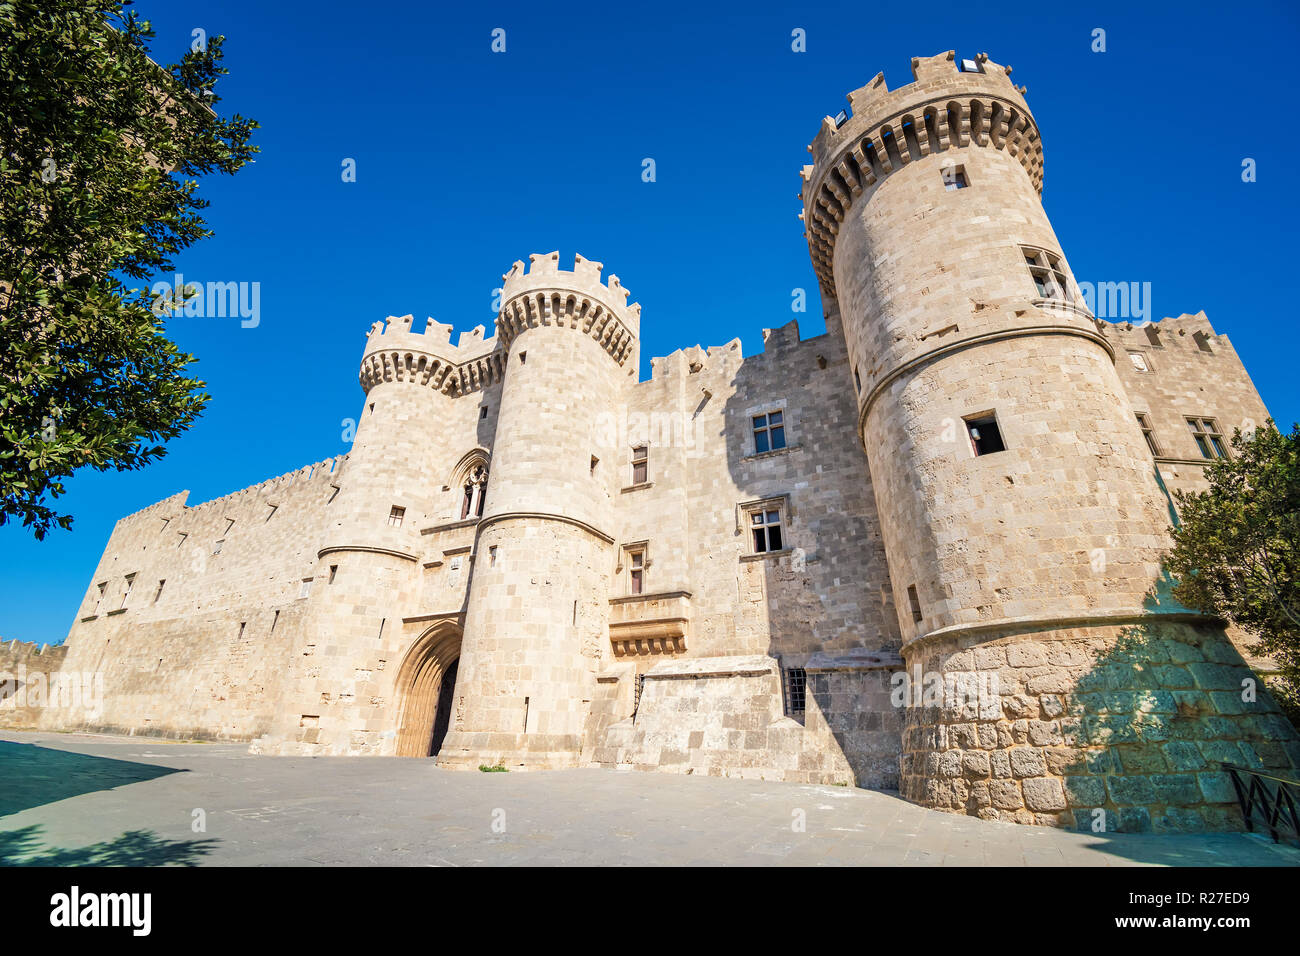 Grand Master Palace dans ville médiévale de Rhodes (Rhodes, Grèce) Banque D'Images